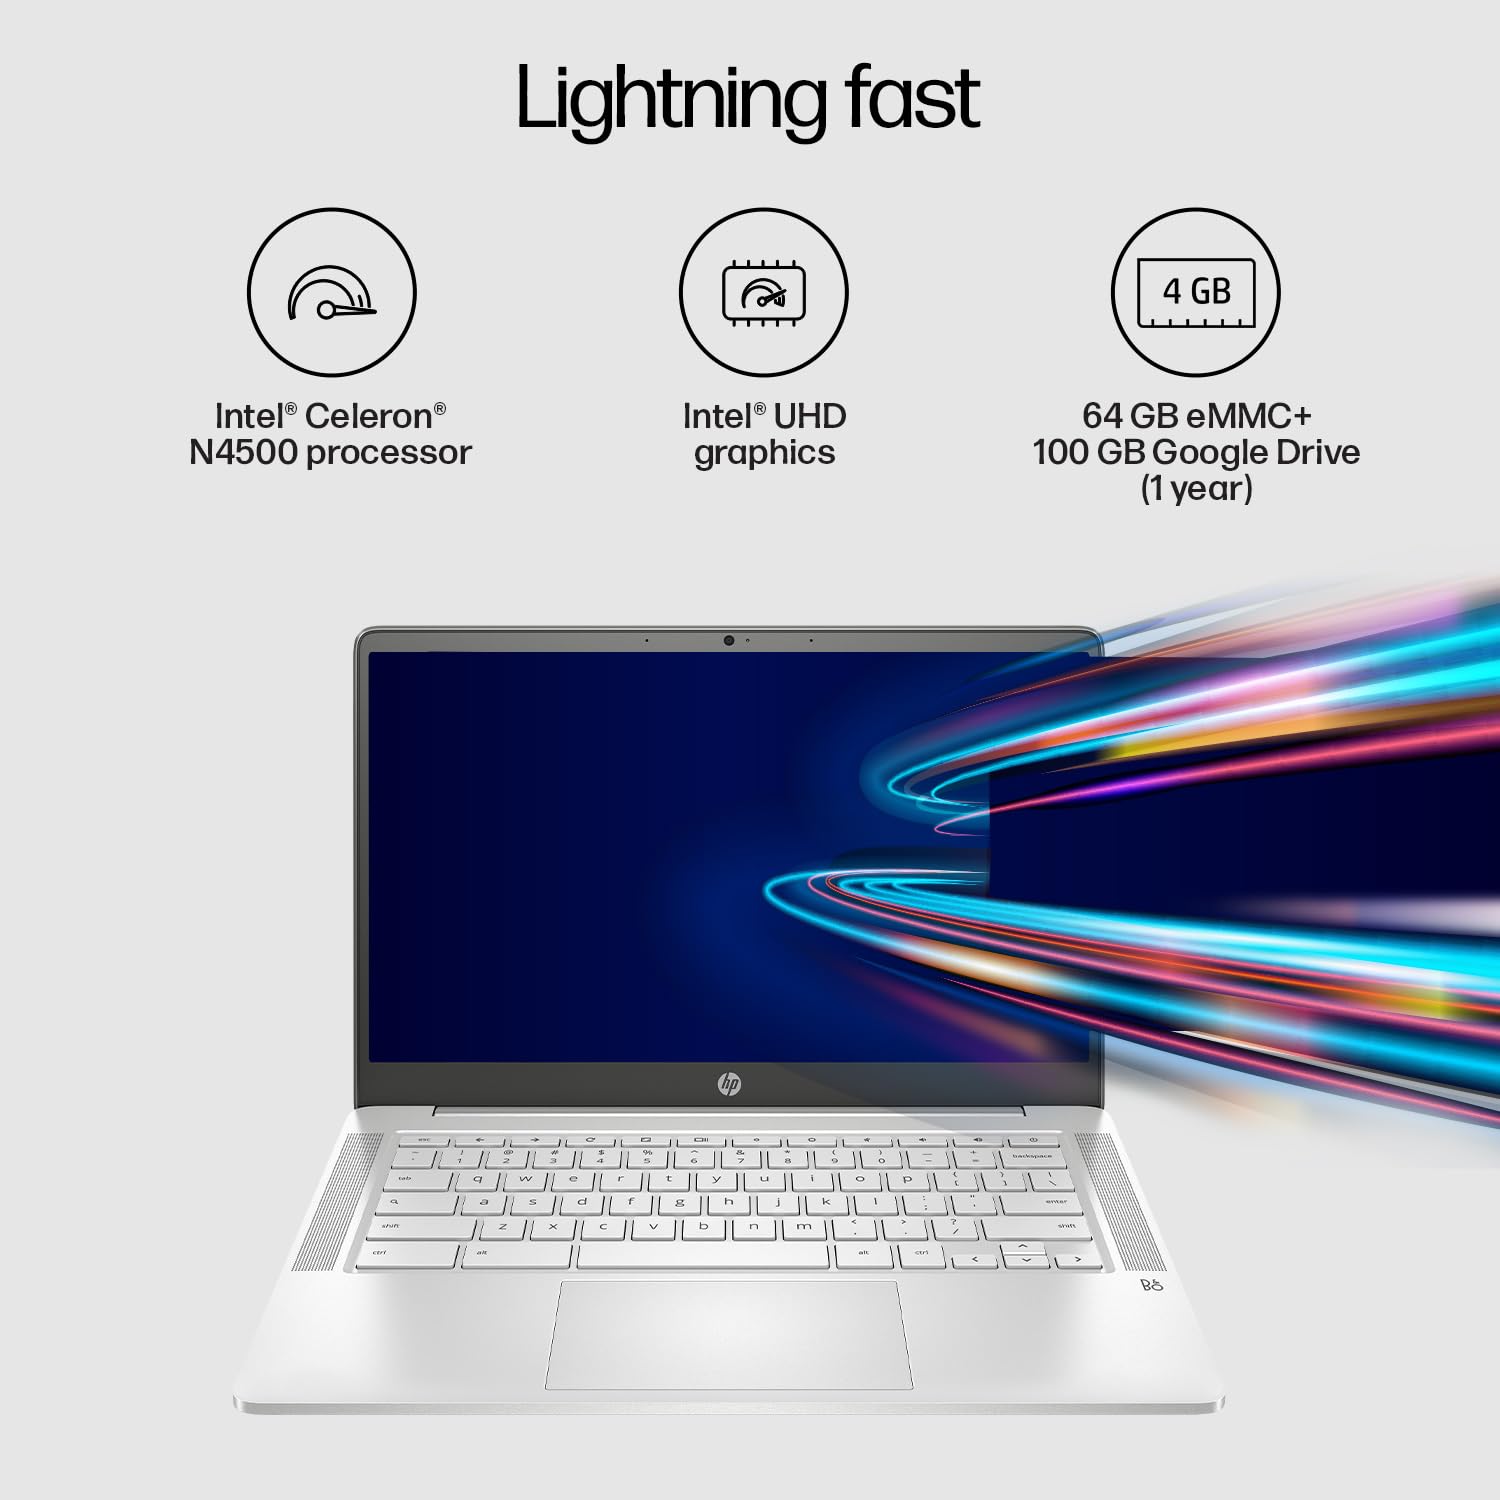 HP Chromebook 35.6 cm Laptop 14a-na1004TU - 35.6 cm (14) (5C5M4PA